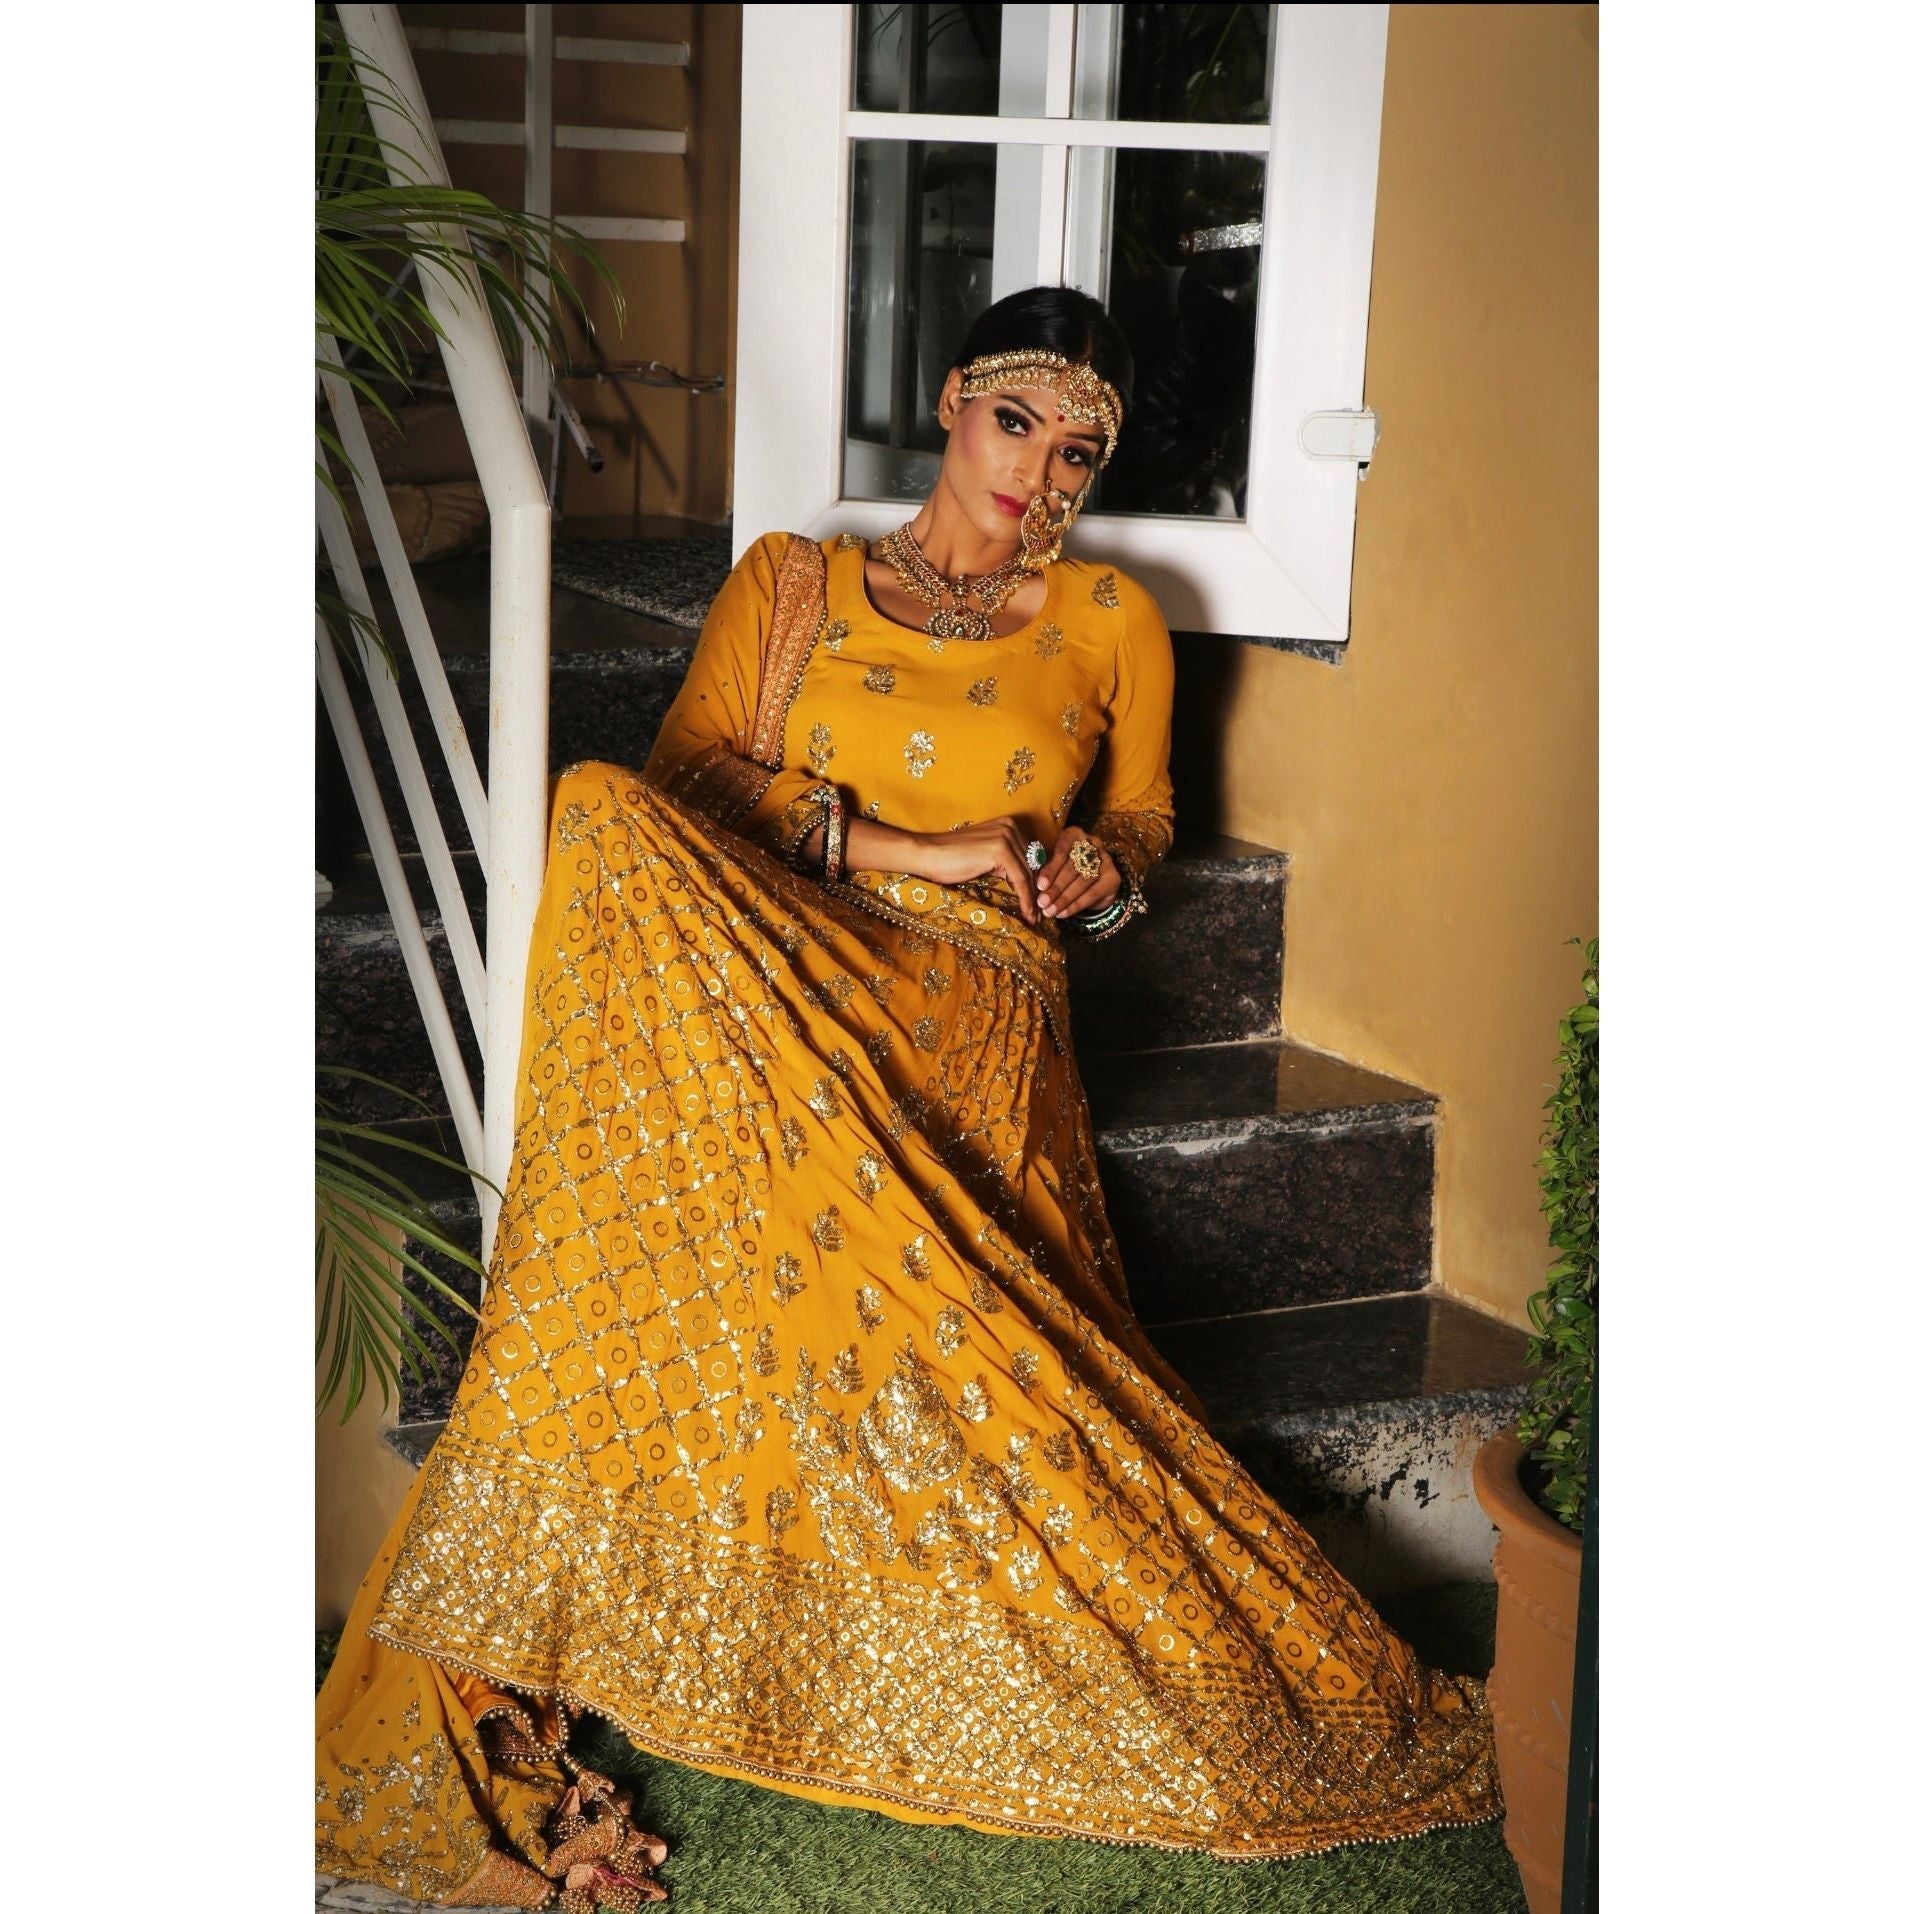 Mustard Yellow Lehenga Set - Indian Designer Bridal Wedding Outfit